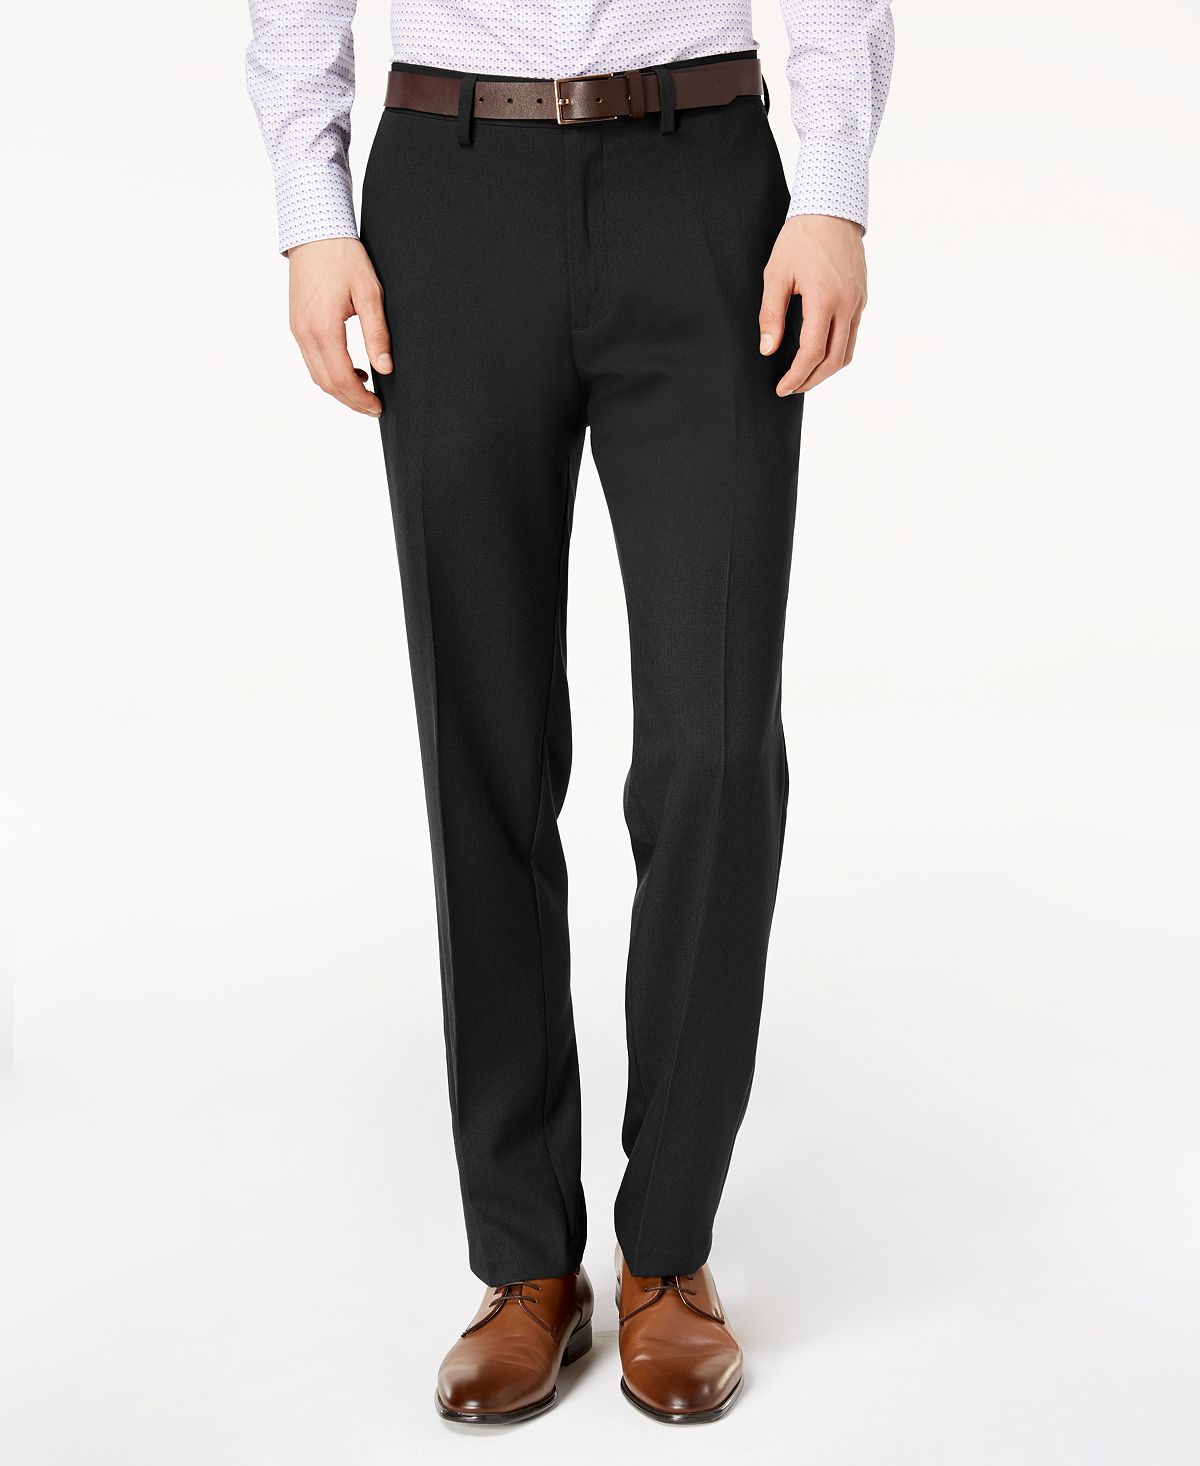 Мужские классические брюки modern-fit в мелкую клетку Kenneth ColeReaction, черный – заказать с доставкой из-за рубежа через онлайн-сервис«CDEK.Shopping»